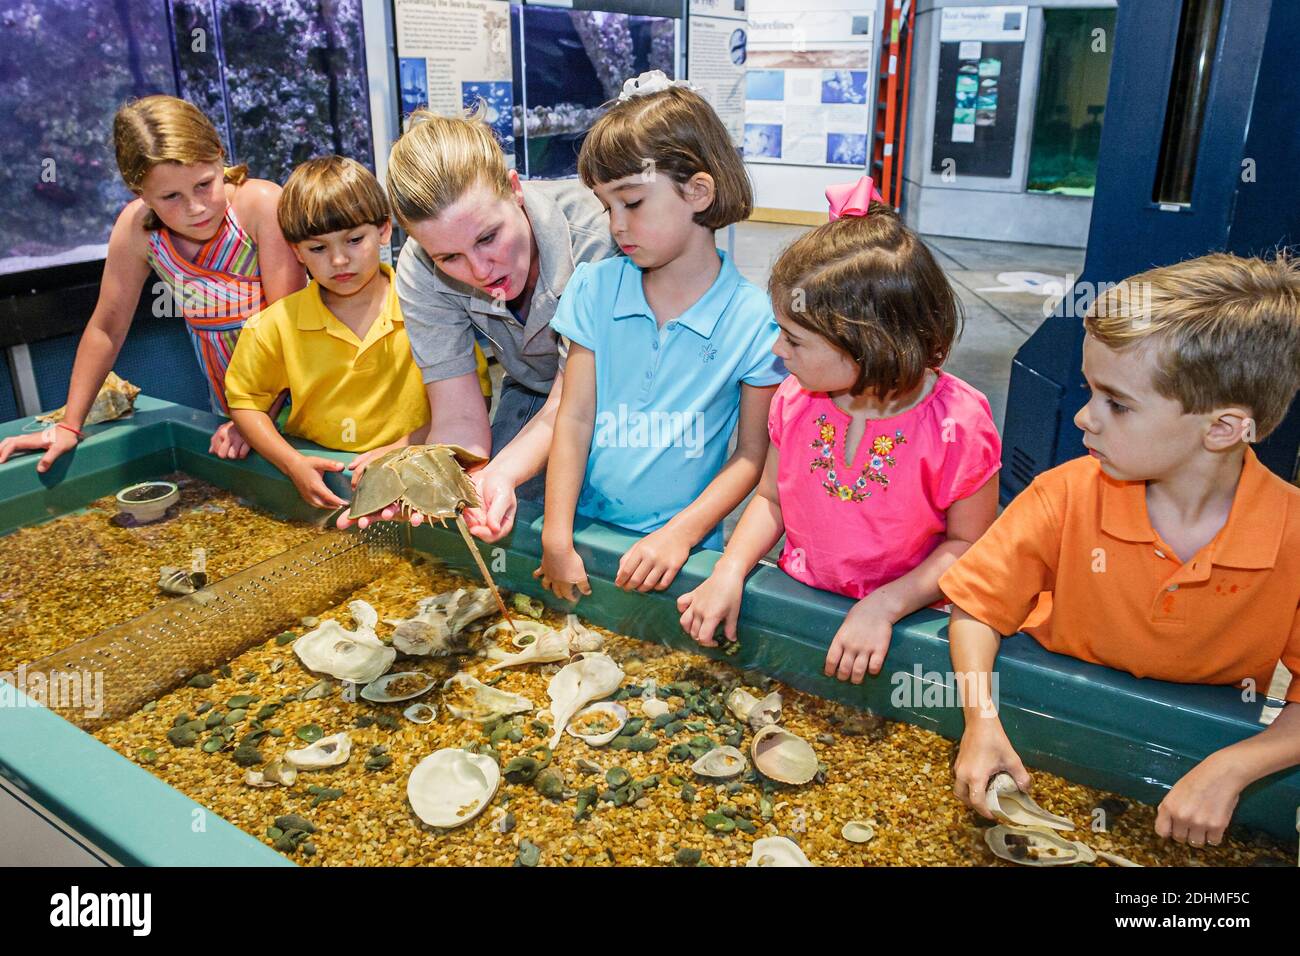 Alabama Dauphin Island Sea Lab Estuarium public aquarium,hands on exhibit shells boys girls naturalist holding horseshoe crab, Stock Photo